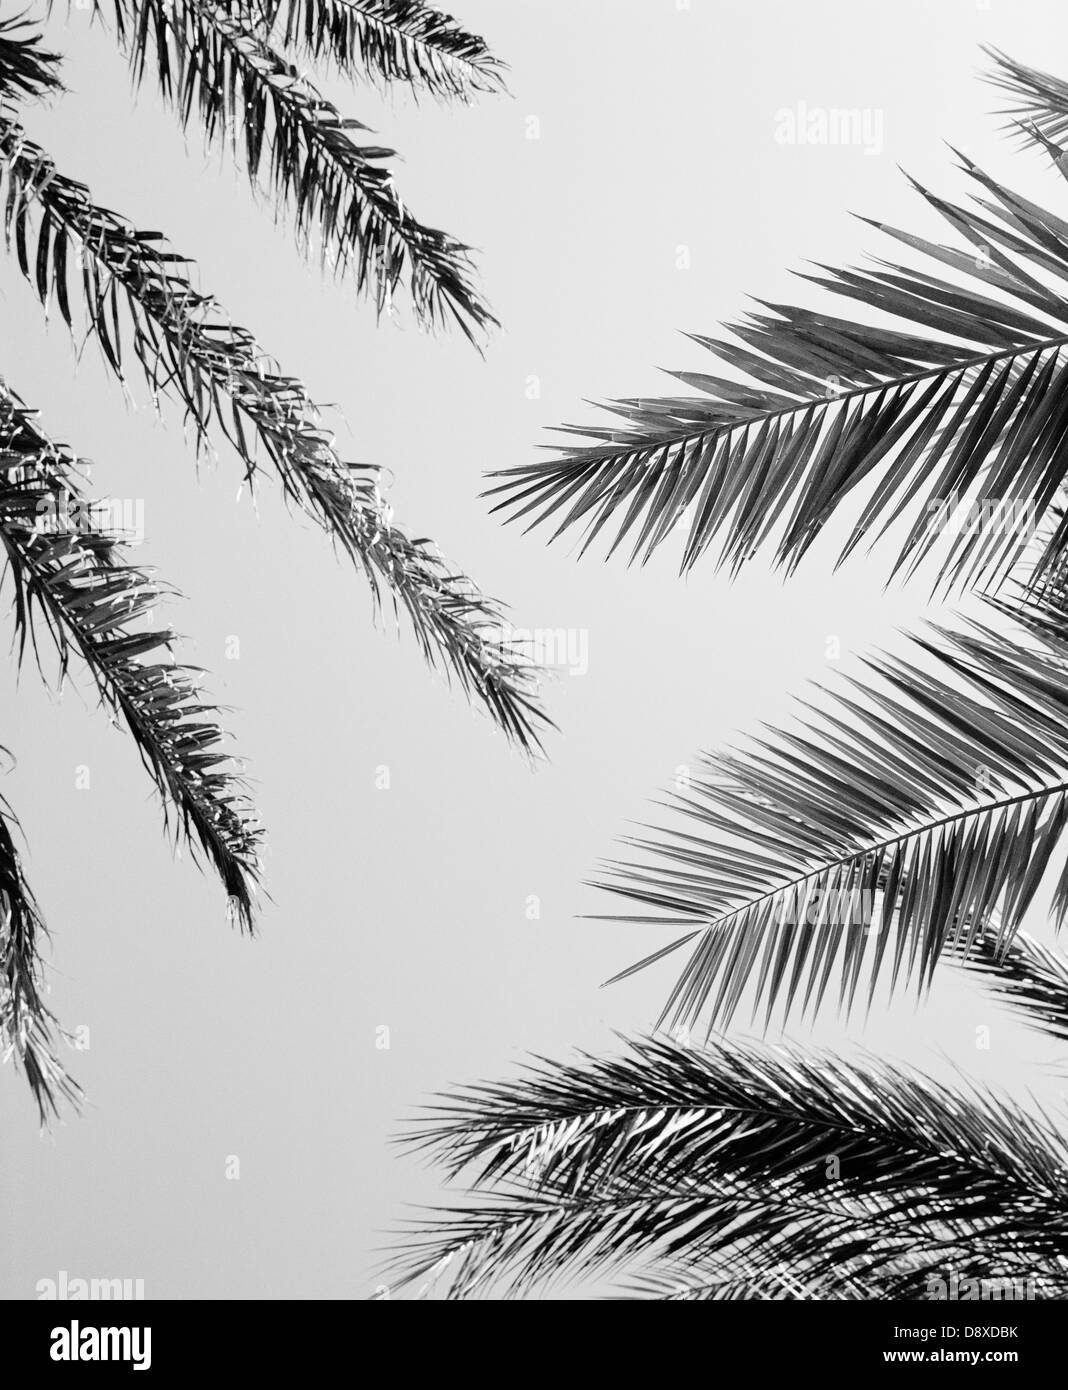 Les feuilles de palmier, low angle view (B&W) Banque D'Images